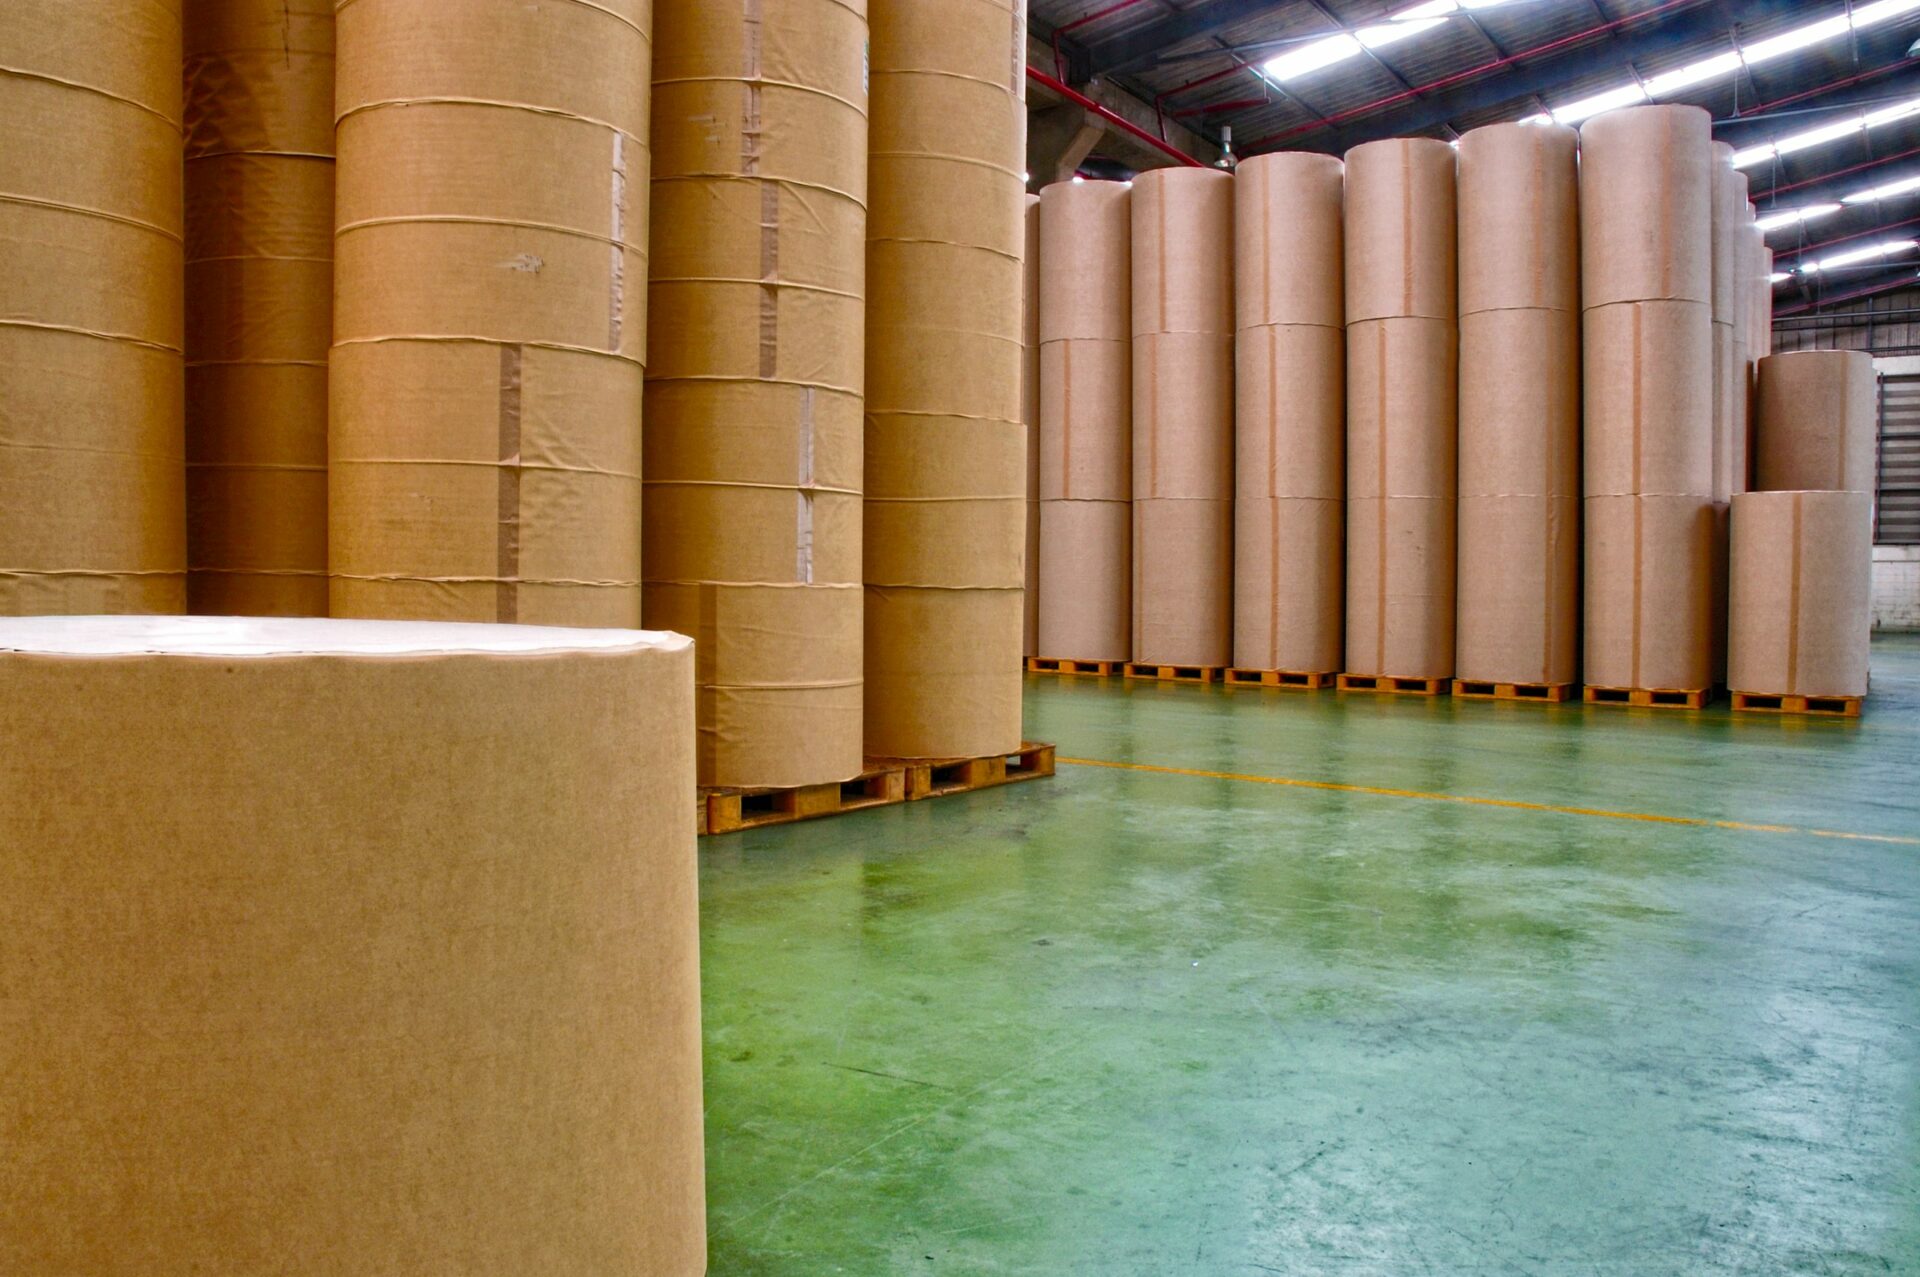 fábrica de papel manufatura armazenamento industrial guerra 2021 08 26 15 29 22 utc em escala